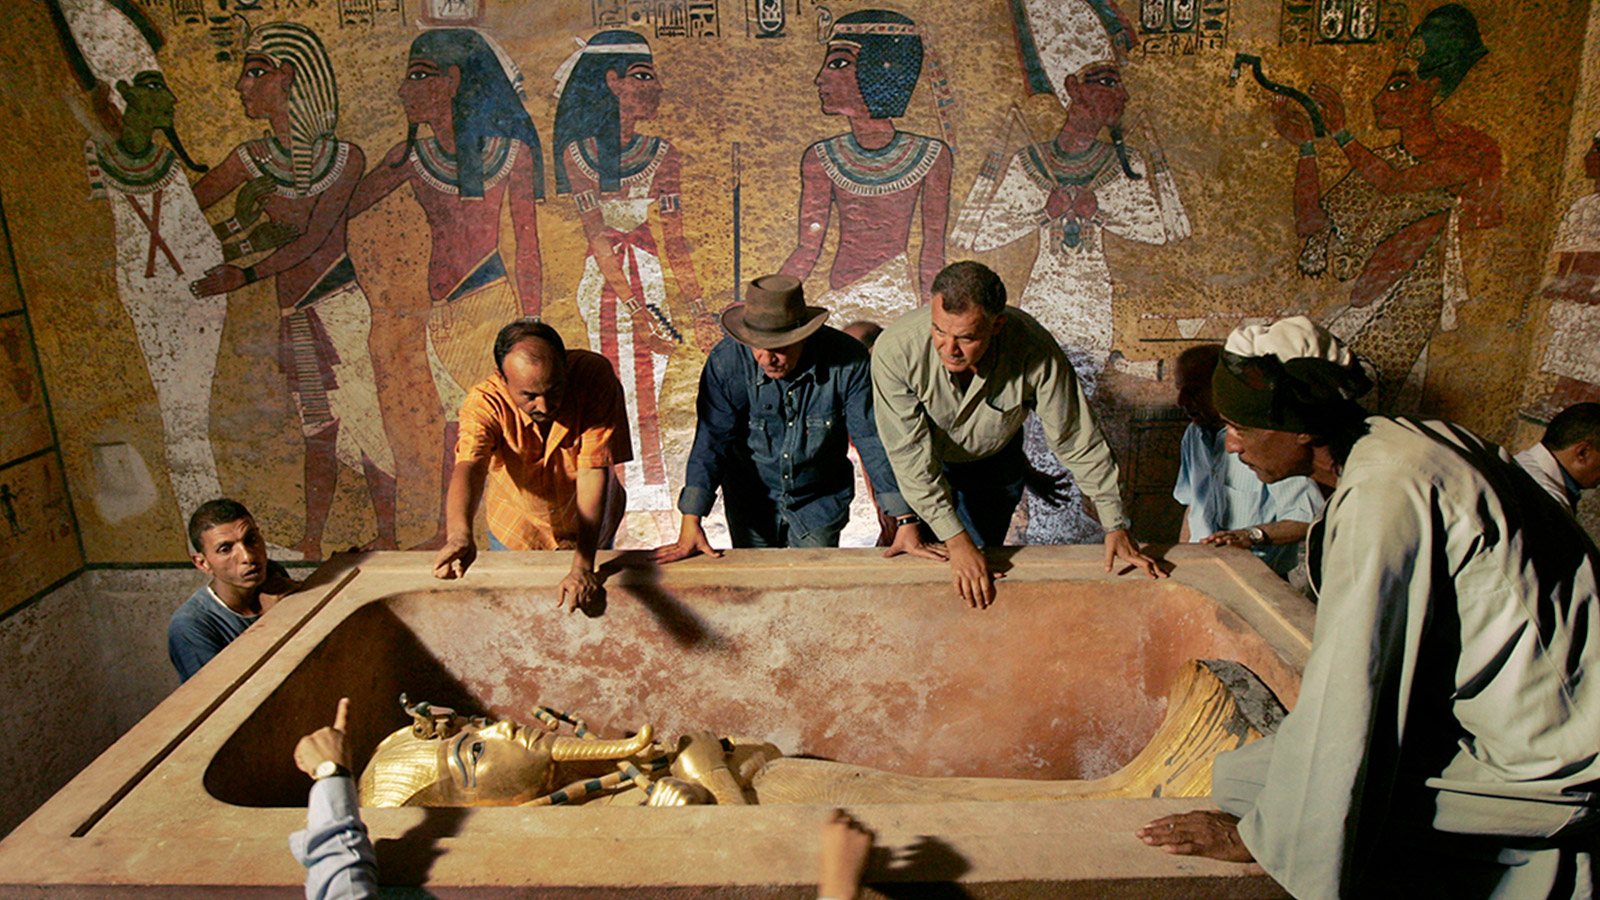 <p>Захи Хавасс (на заднем плане, третий слева), глава Верховного совета древностей Египта, наблюдает за извлечением мумии царя Тутанхамона из его каменного саркофага в подземной гробнице в Долине Царей в Луксоре 4 ноября 2007 года. Это был первый раз, когда широкая общественность смогла увидеть &laquo;лицо&raquo; древнеегипетского правителя</p>